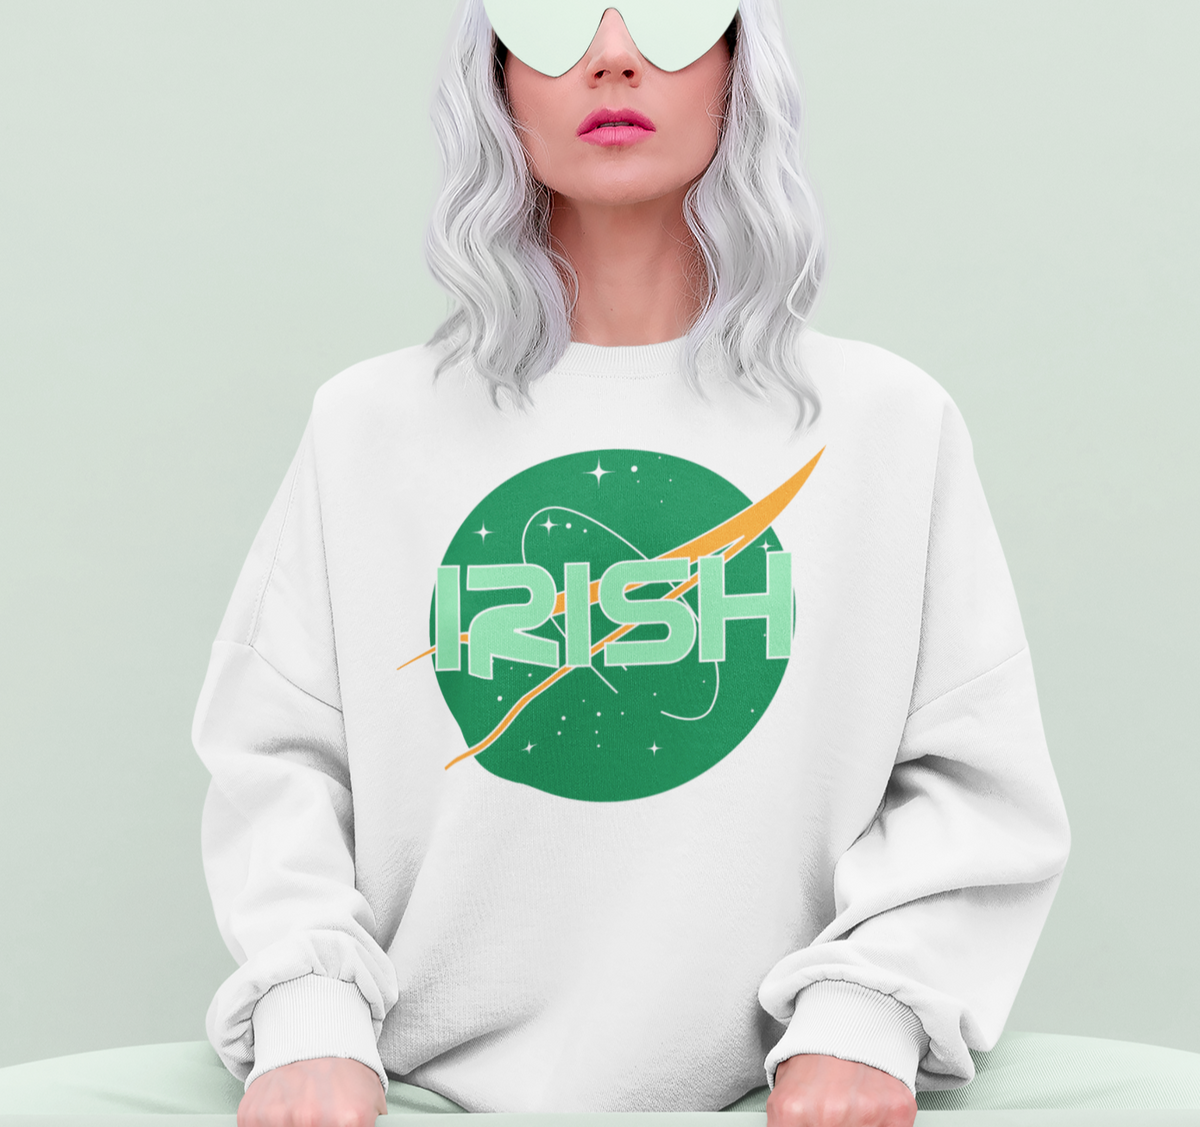 White sweatshirt with the nasa logo saying irish - HighCiti